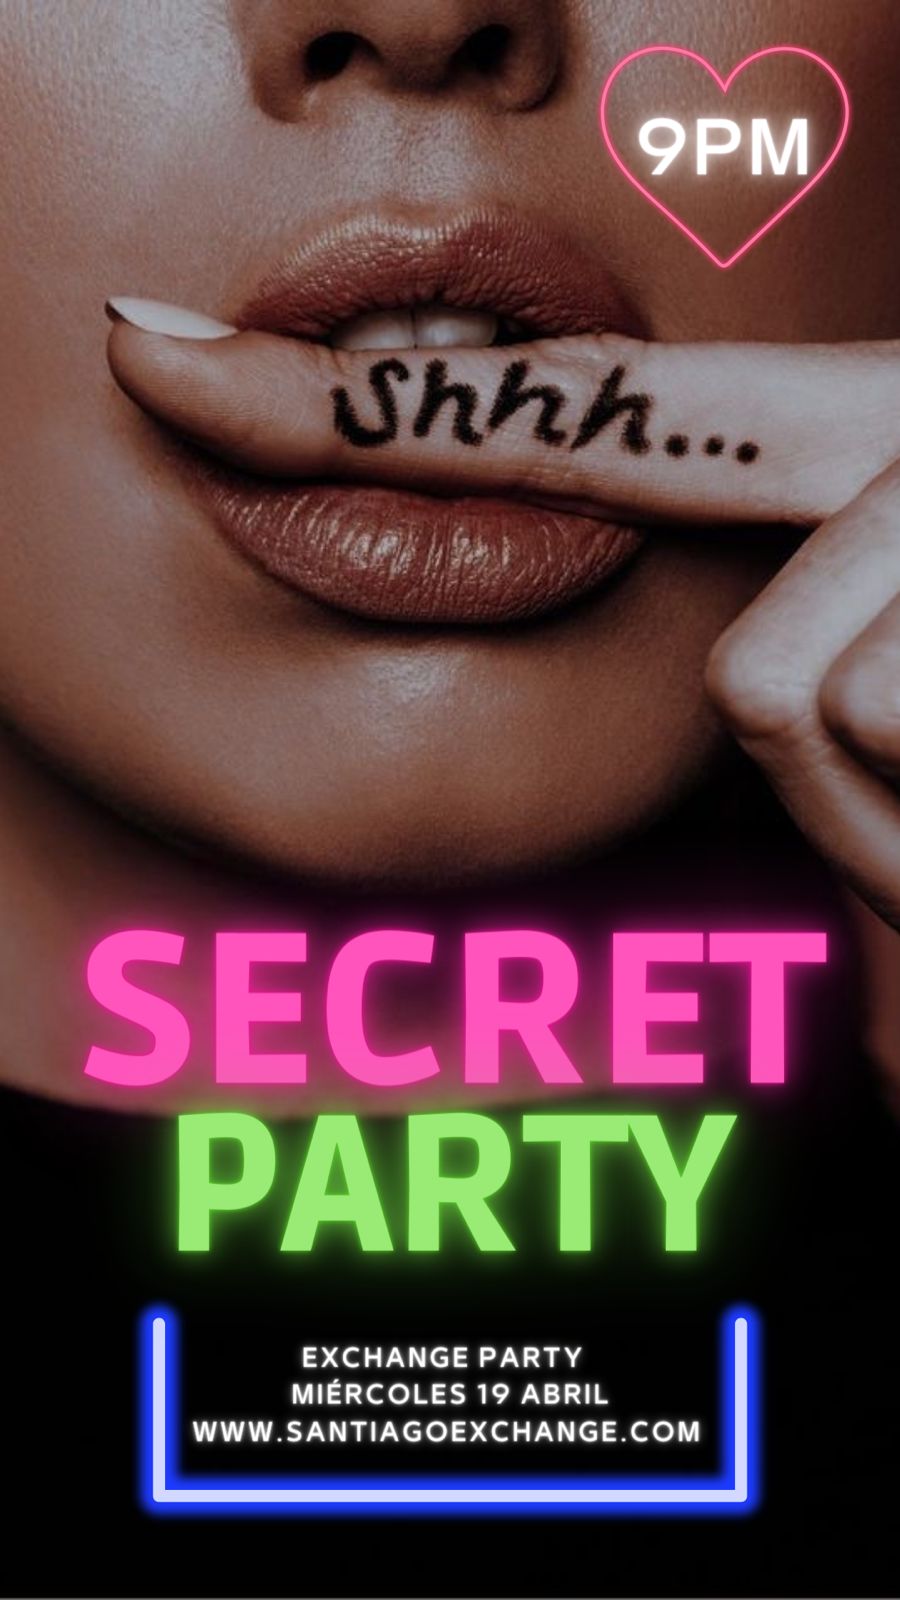 SEN - Secret Party → Secret Party - Best parties and nightlife in Santiago